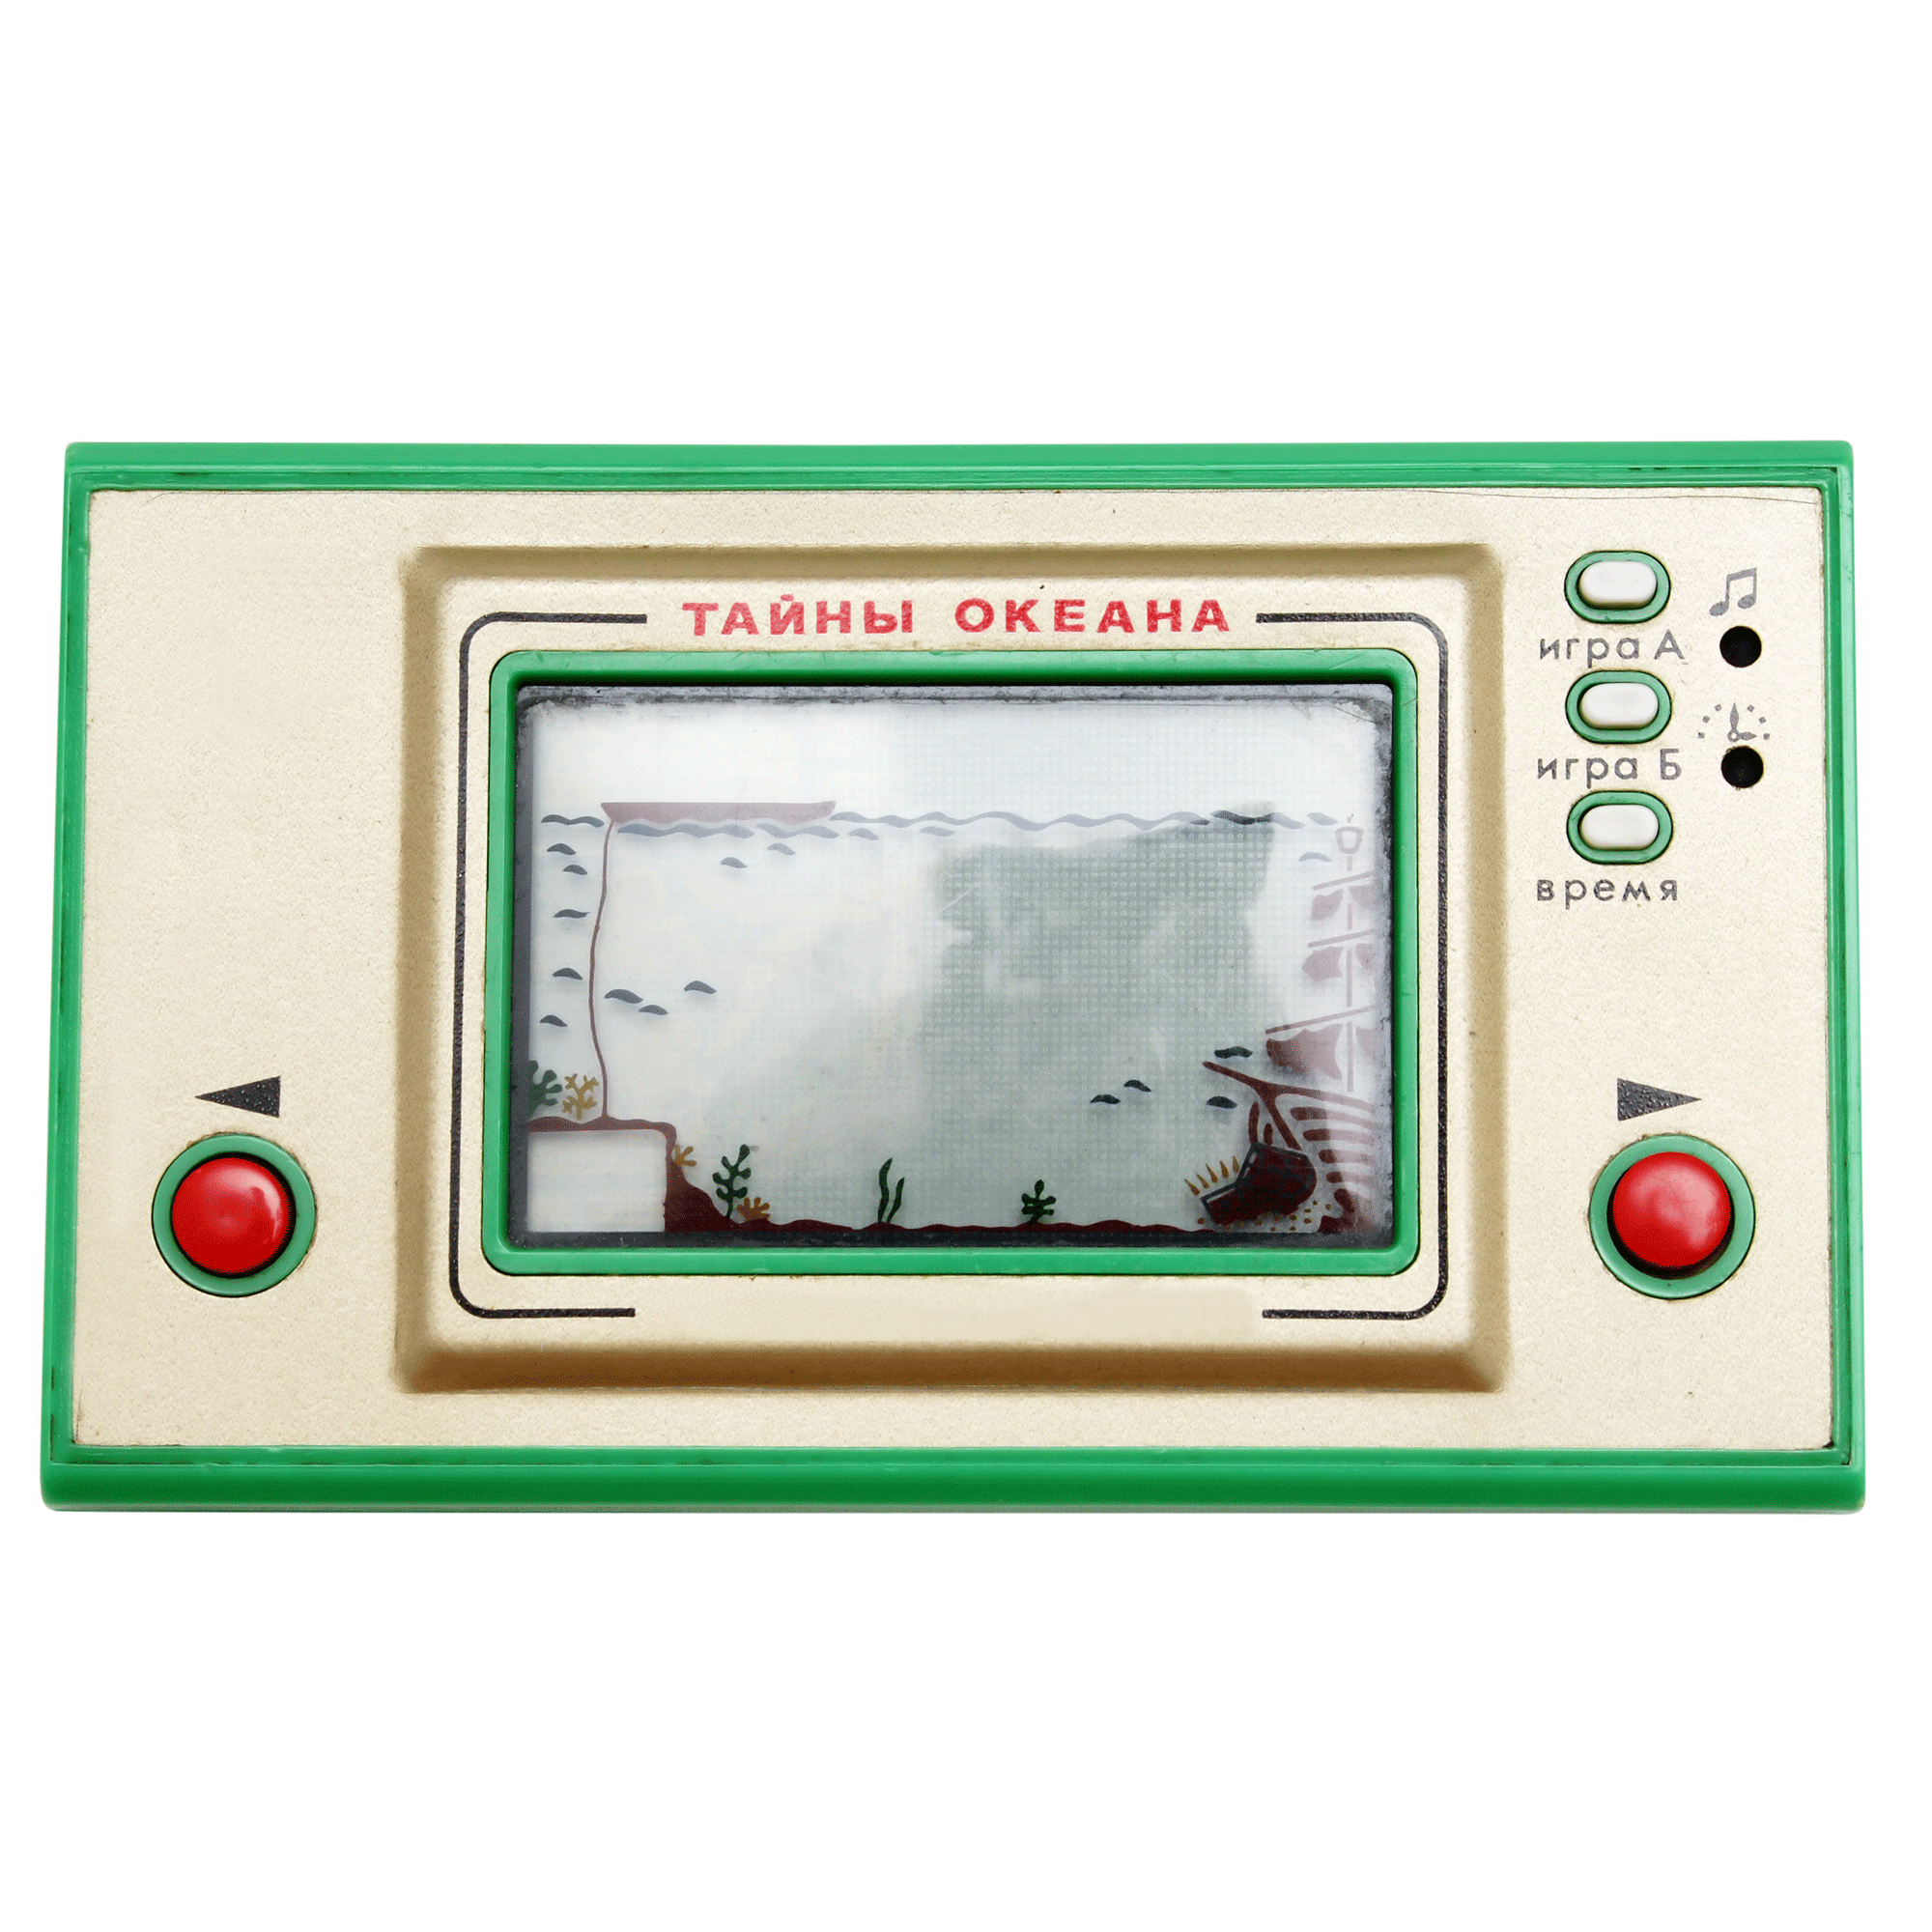 Vintage-Spielkonsole (Alte Nintendo-Spielkonsole Tricotronic mit Spiel “Ocean”, Nintendo Game & Watch-Konsole der Widescreen-Serie mit “Ocean” Spiel)